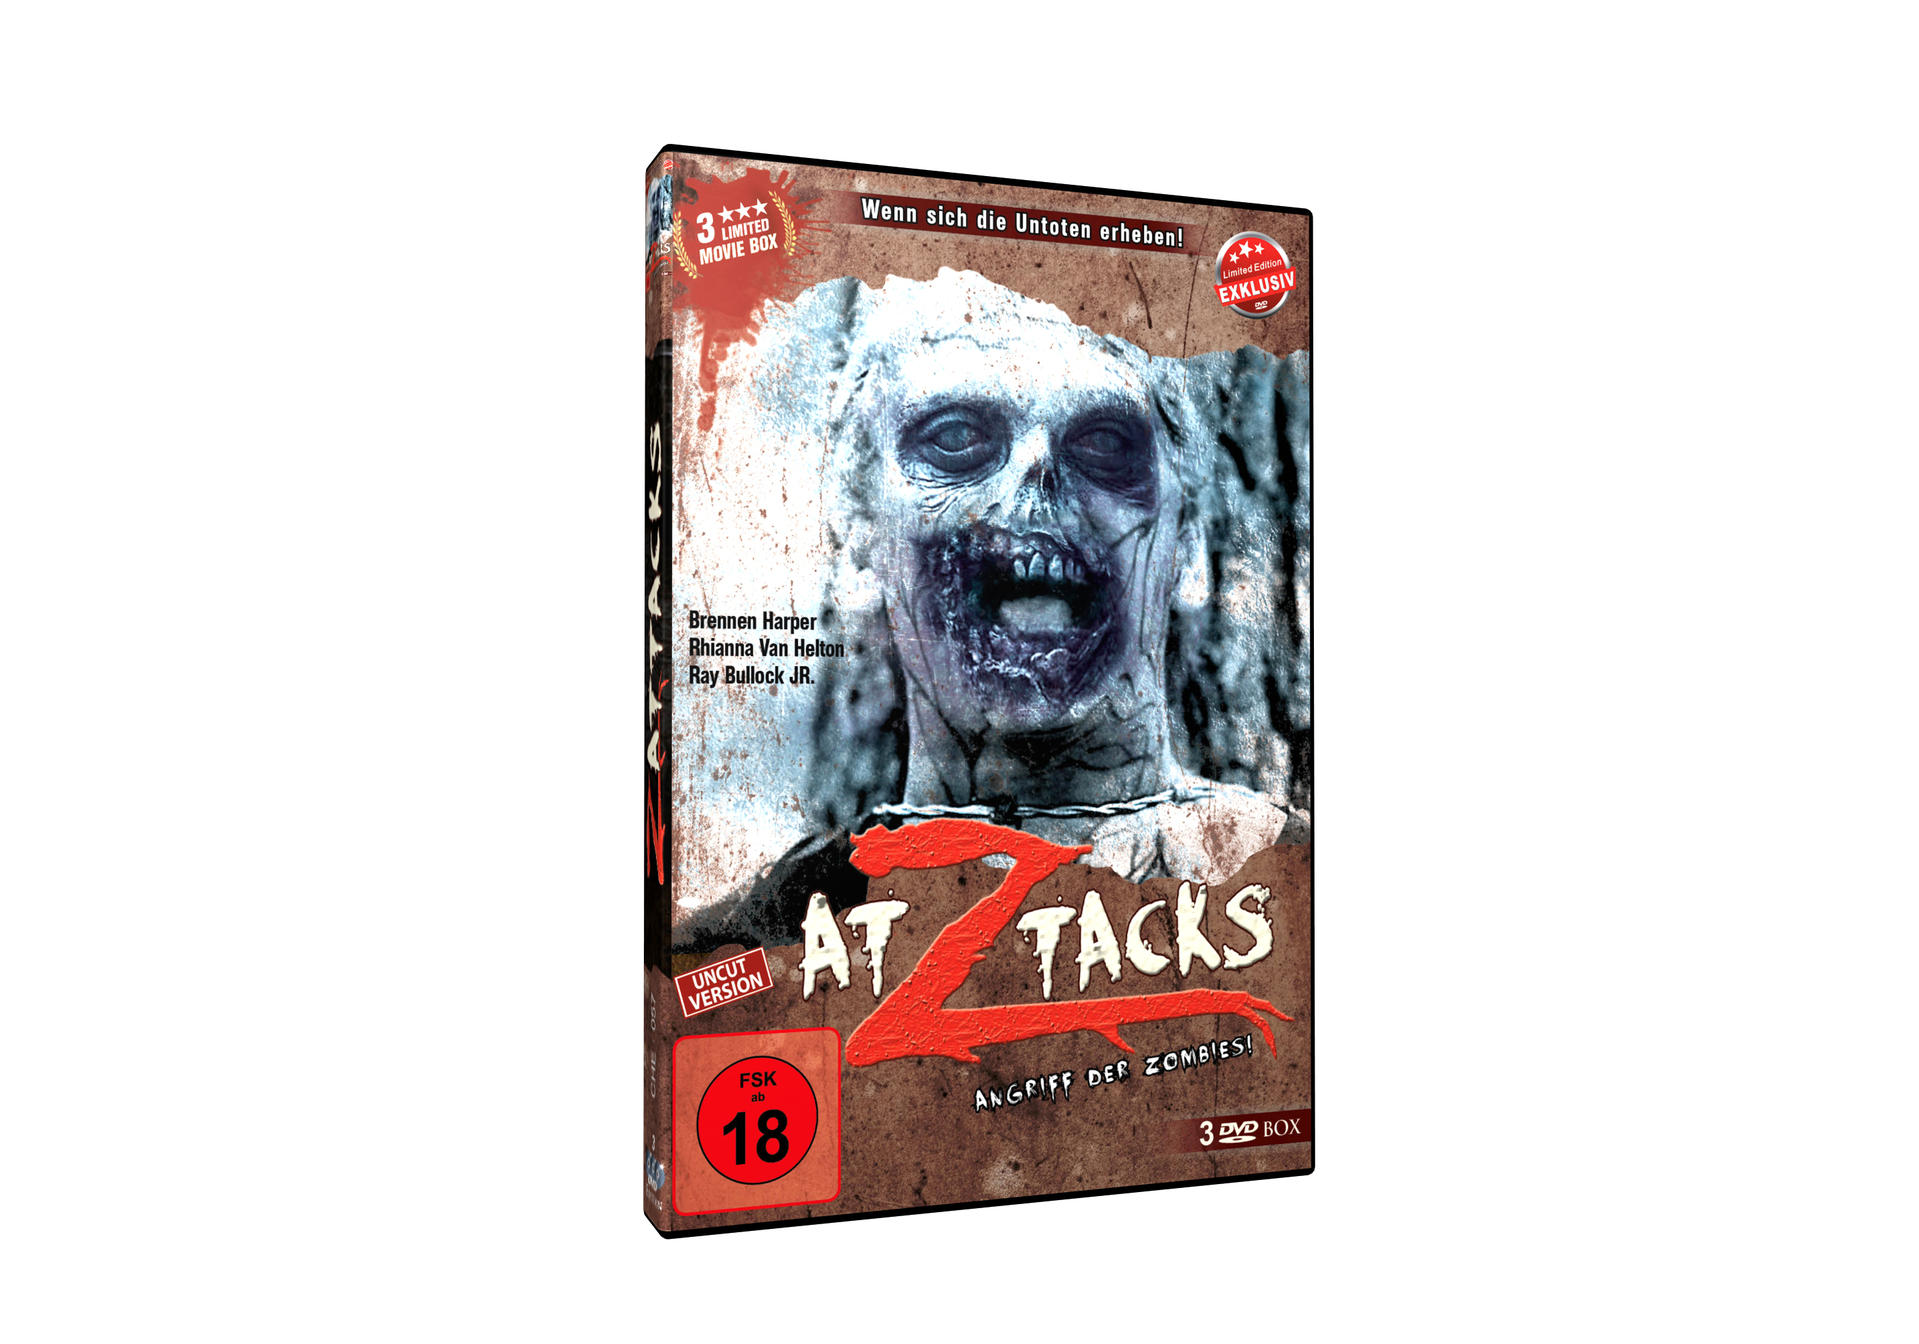 Attacks DVD Z